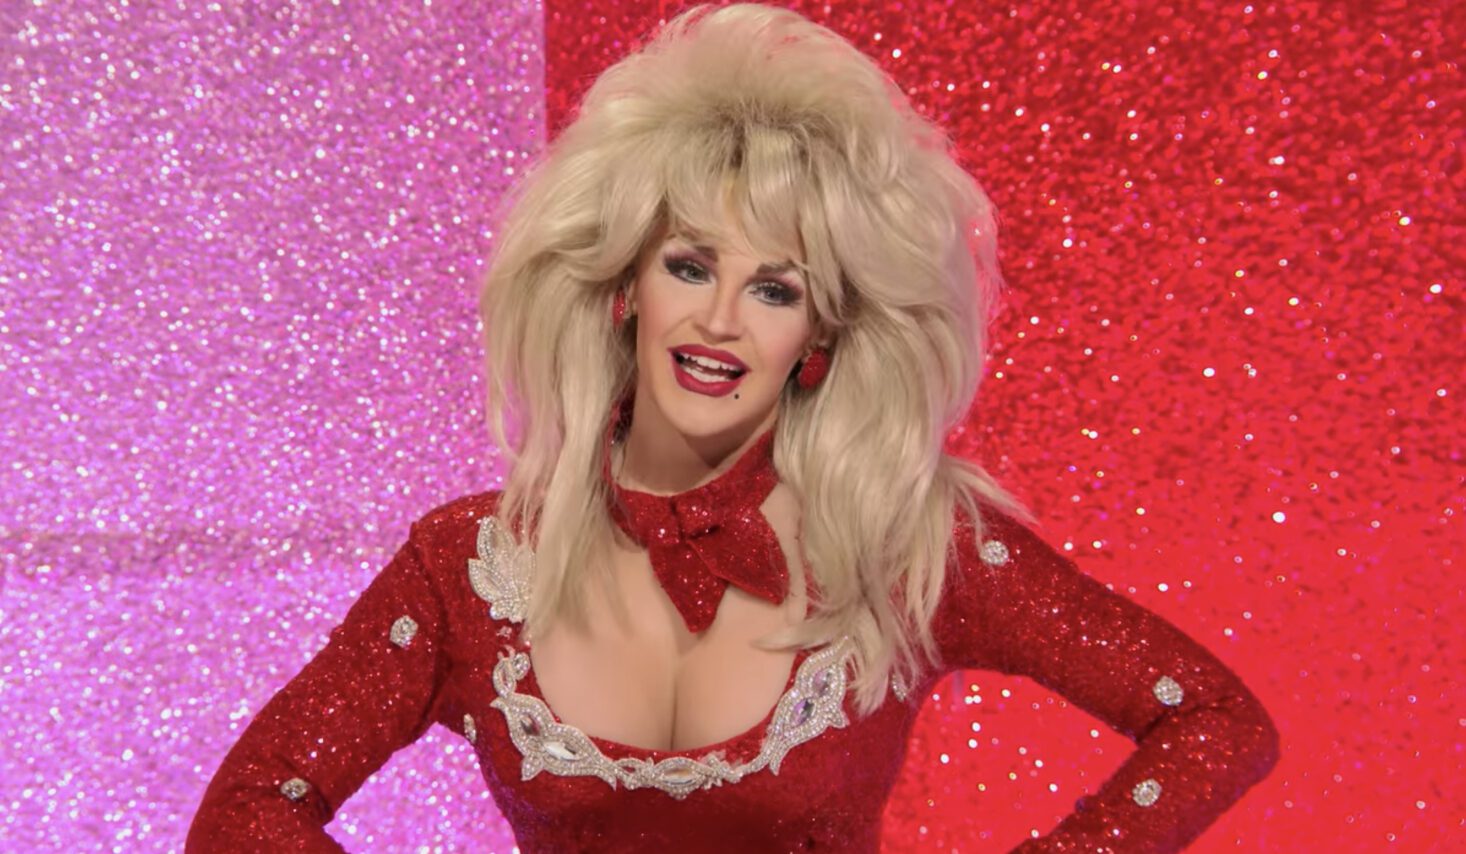 Cena do reality show All Stars 6. Na foto, vemos a drag queen Kylie Sonique Love imitando a cantora Dolly Parton. Ela sorri, usa uma peruca loira bem volumosa e um vestido vermelho com decote avantajado. 